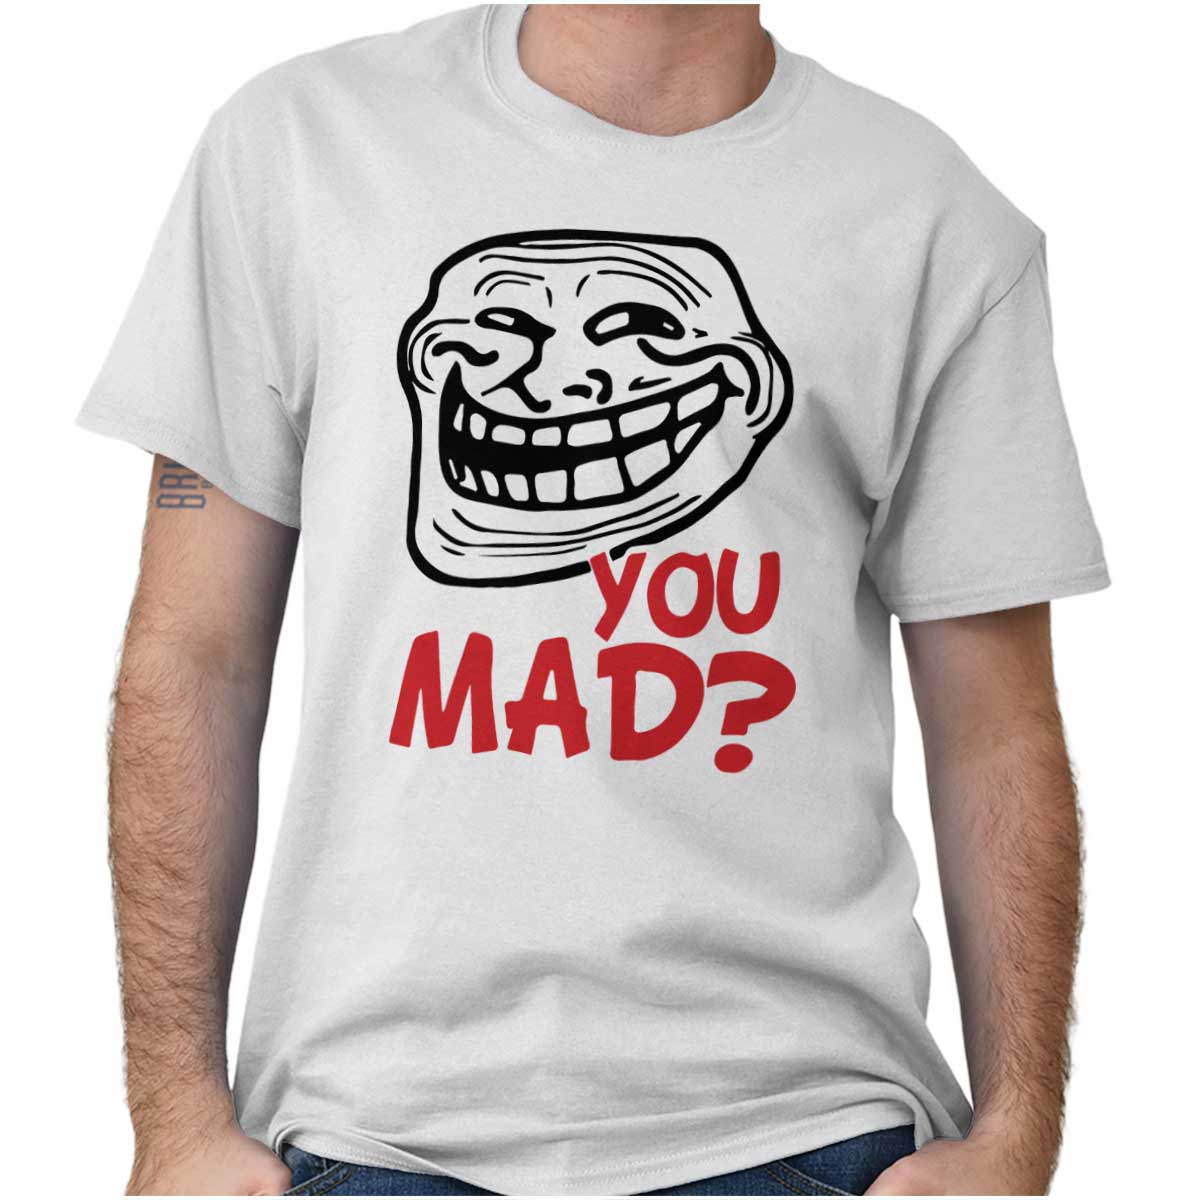 Troll face t-shirt